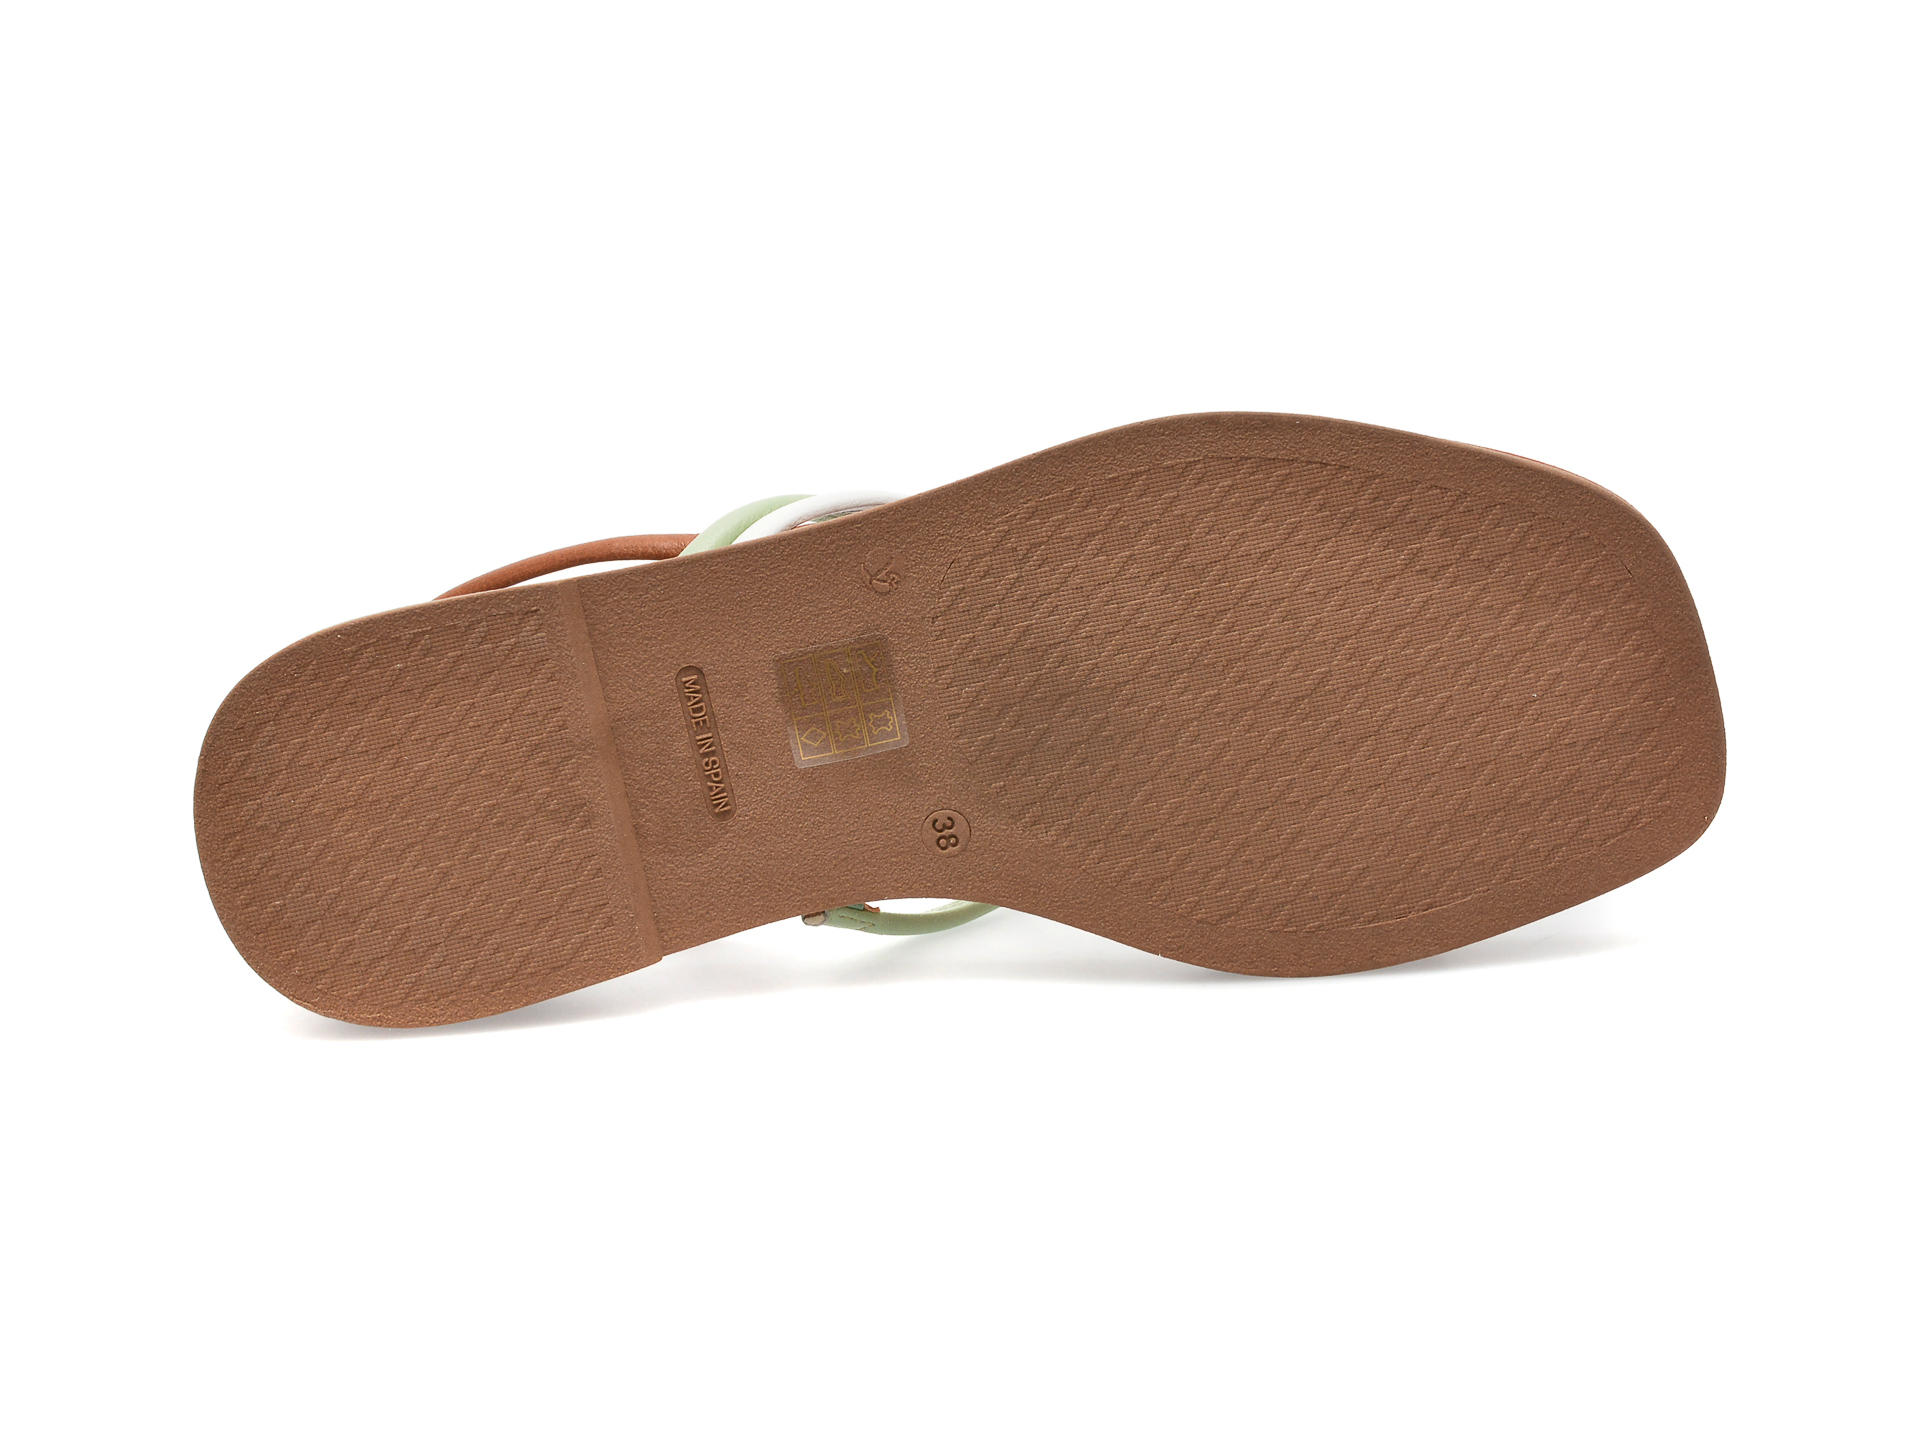 Sandale IMAGE multicolor, CAMILA, din piele naturala